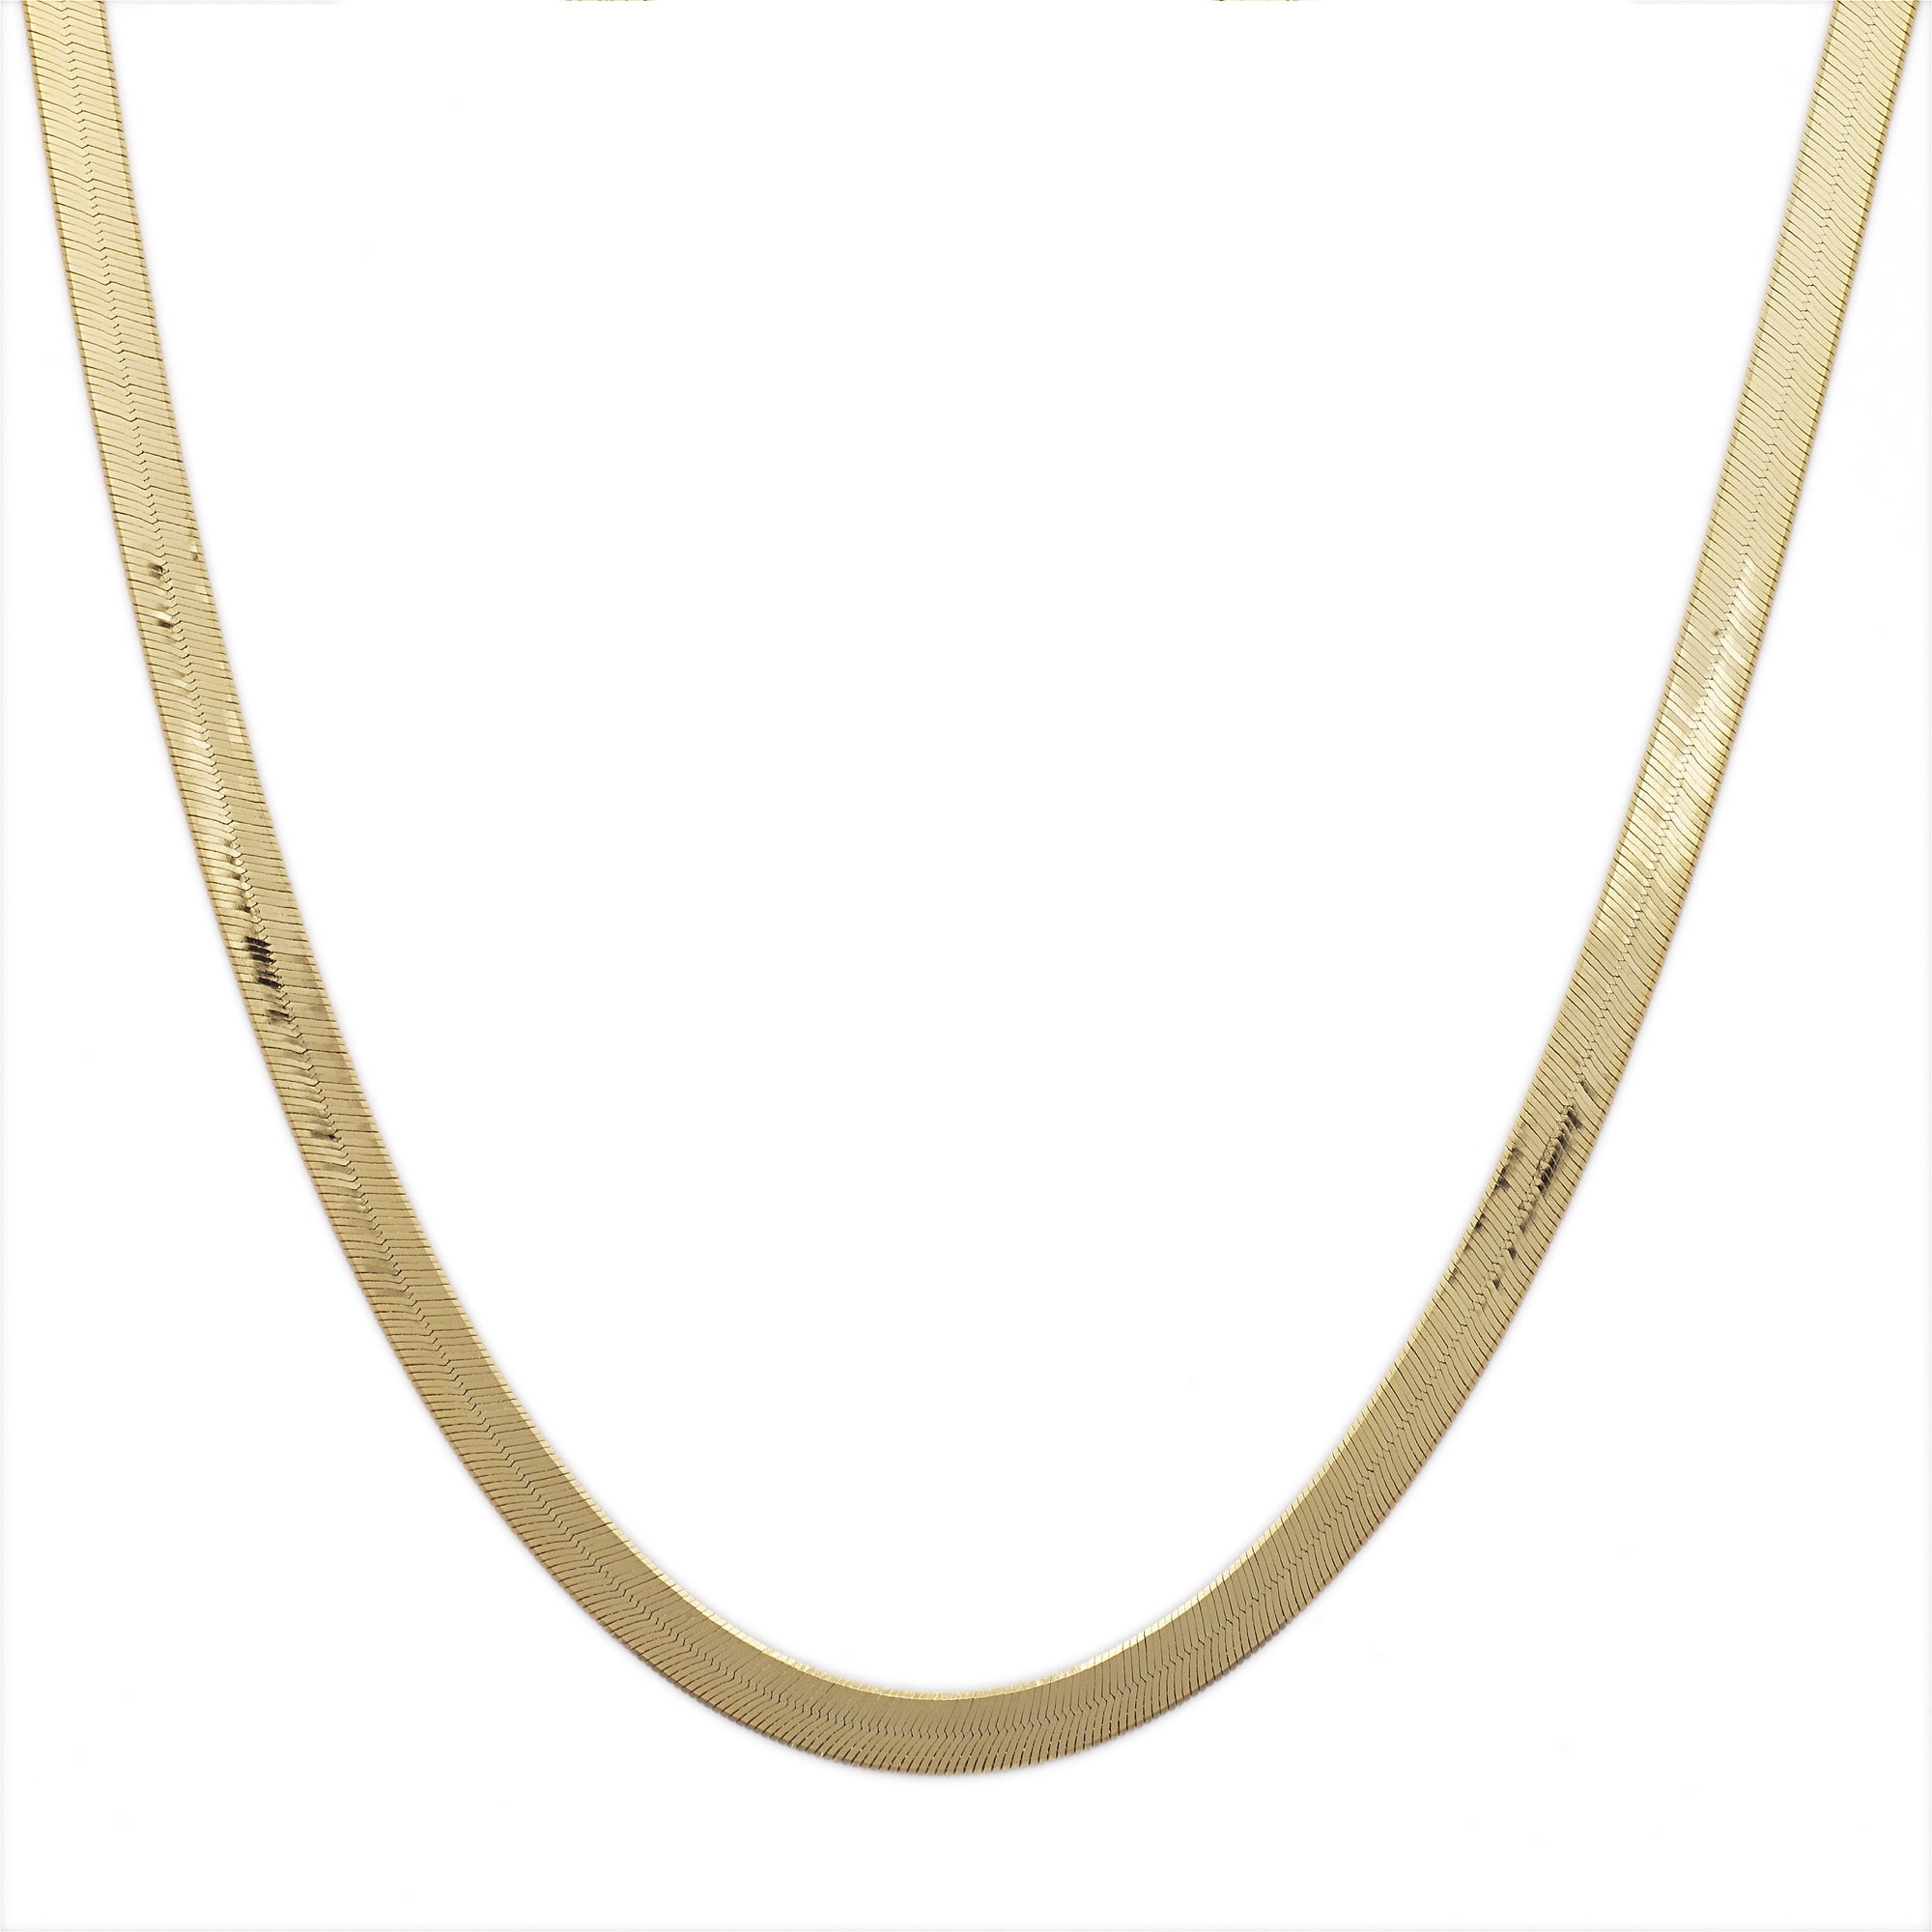 10k 5.5mm Silky Herringbone Chain 